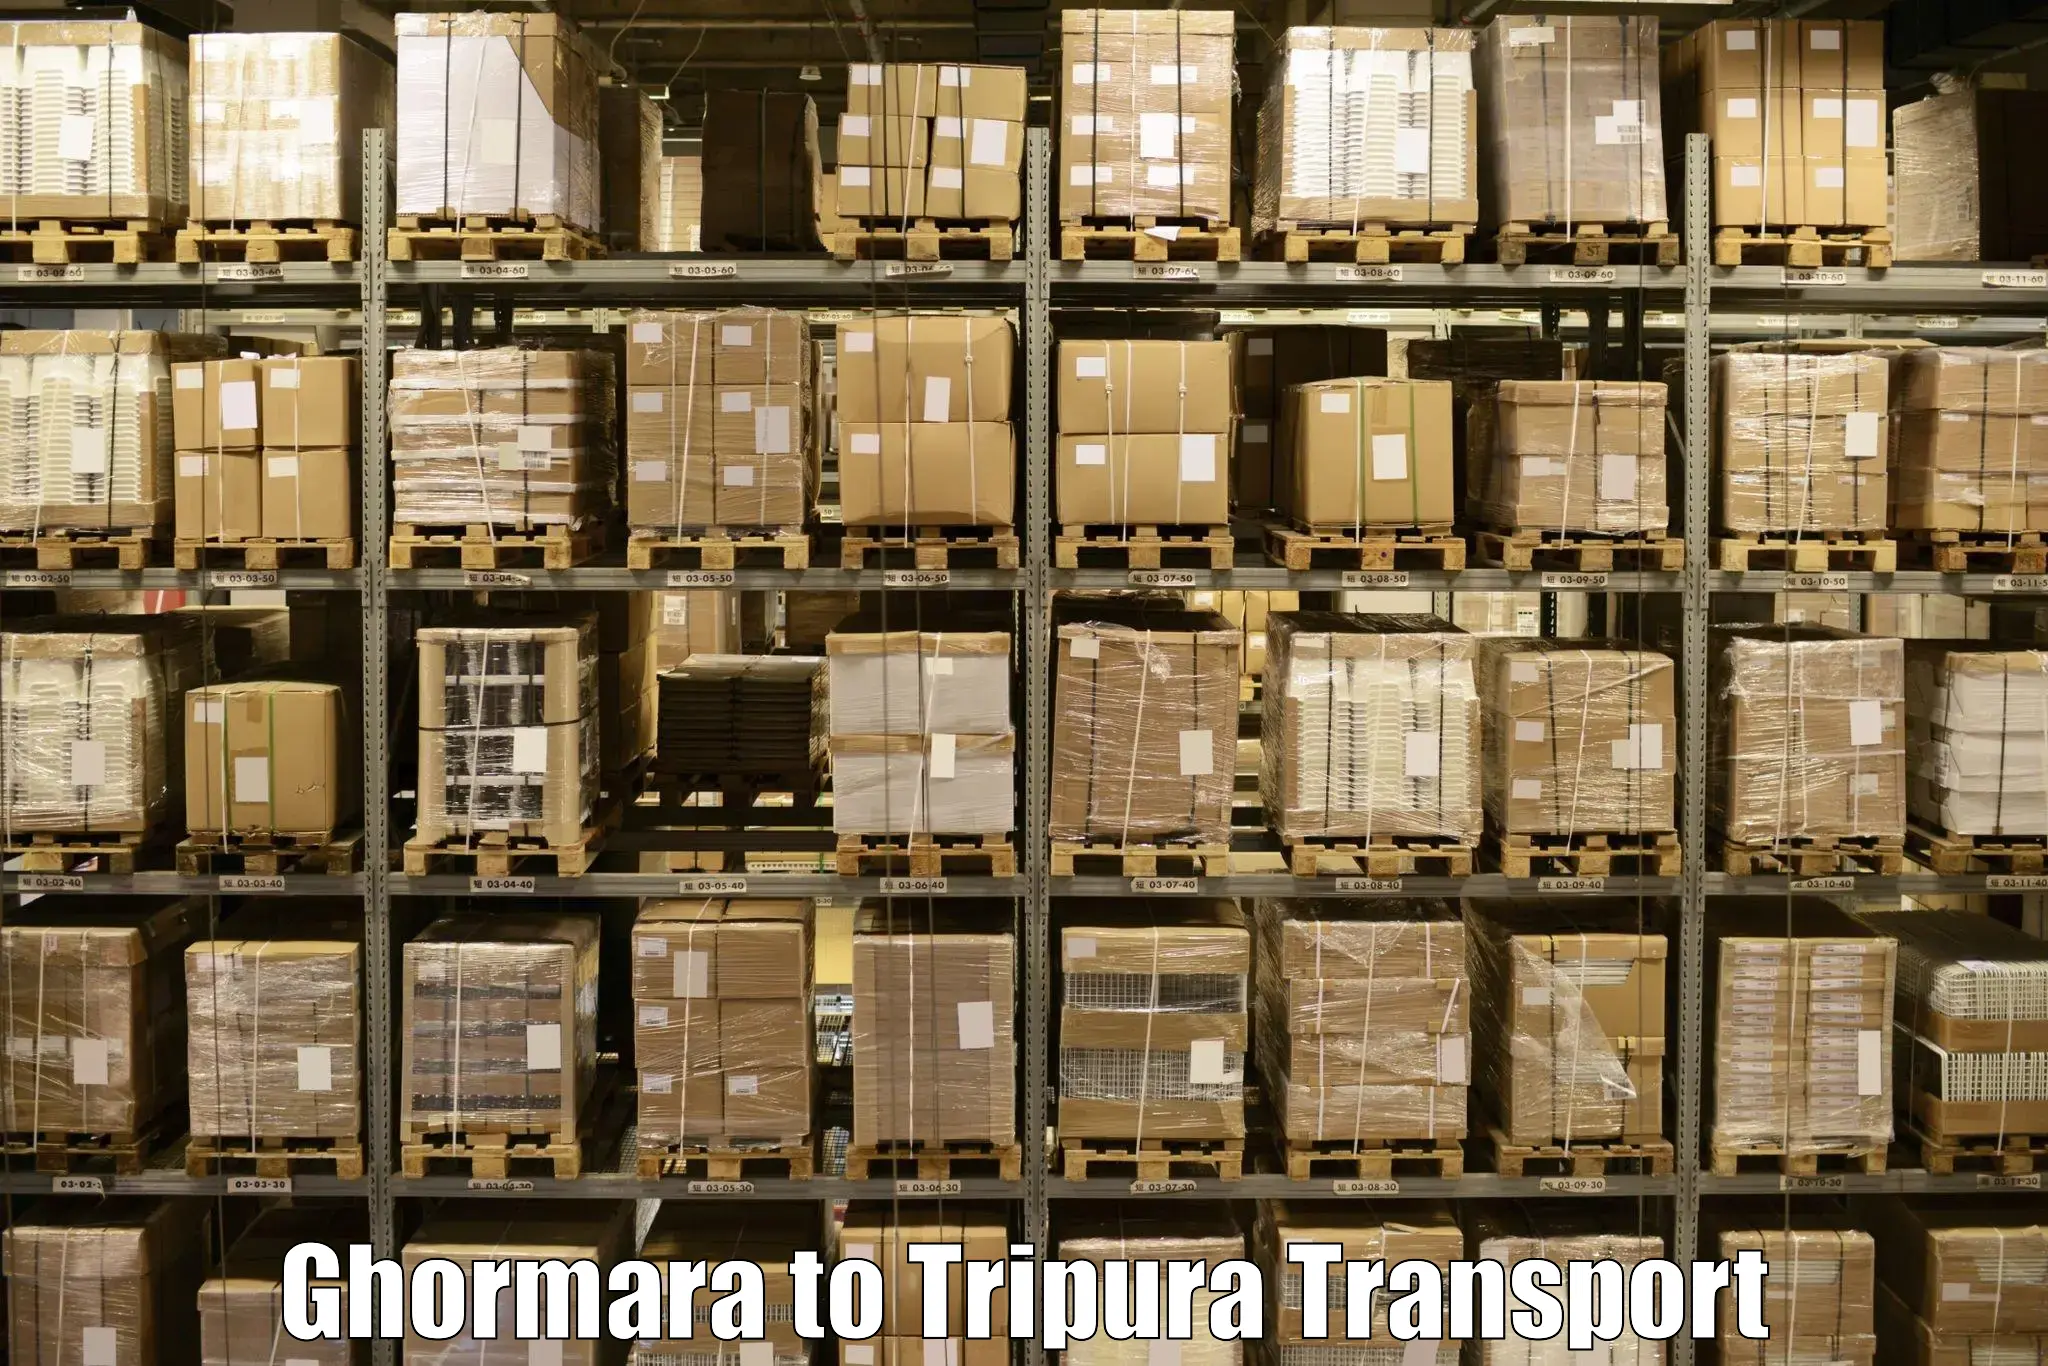 Land transport services in Ghormara to Ambassa